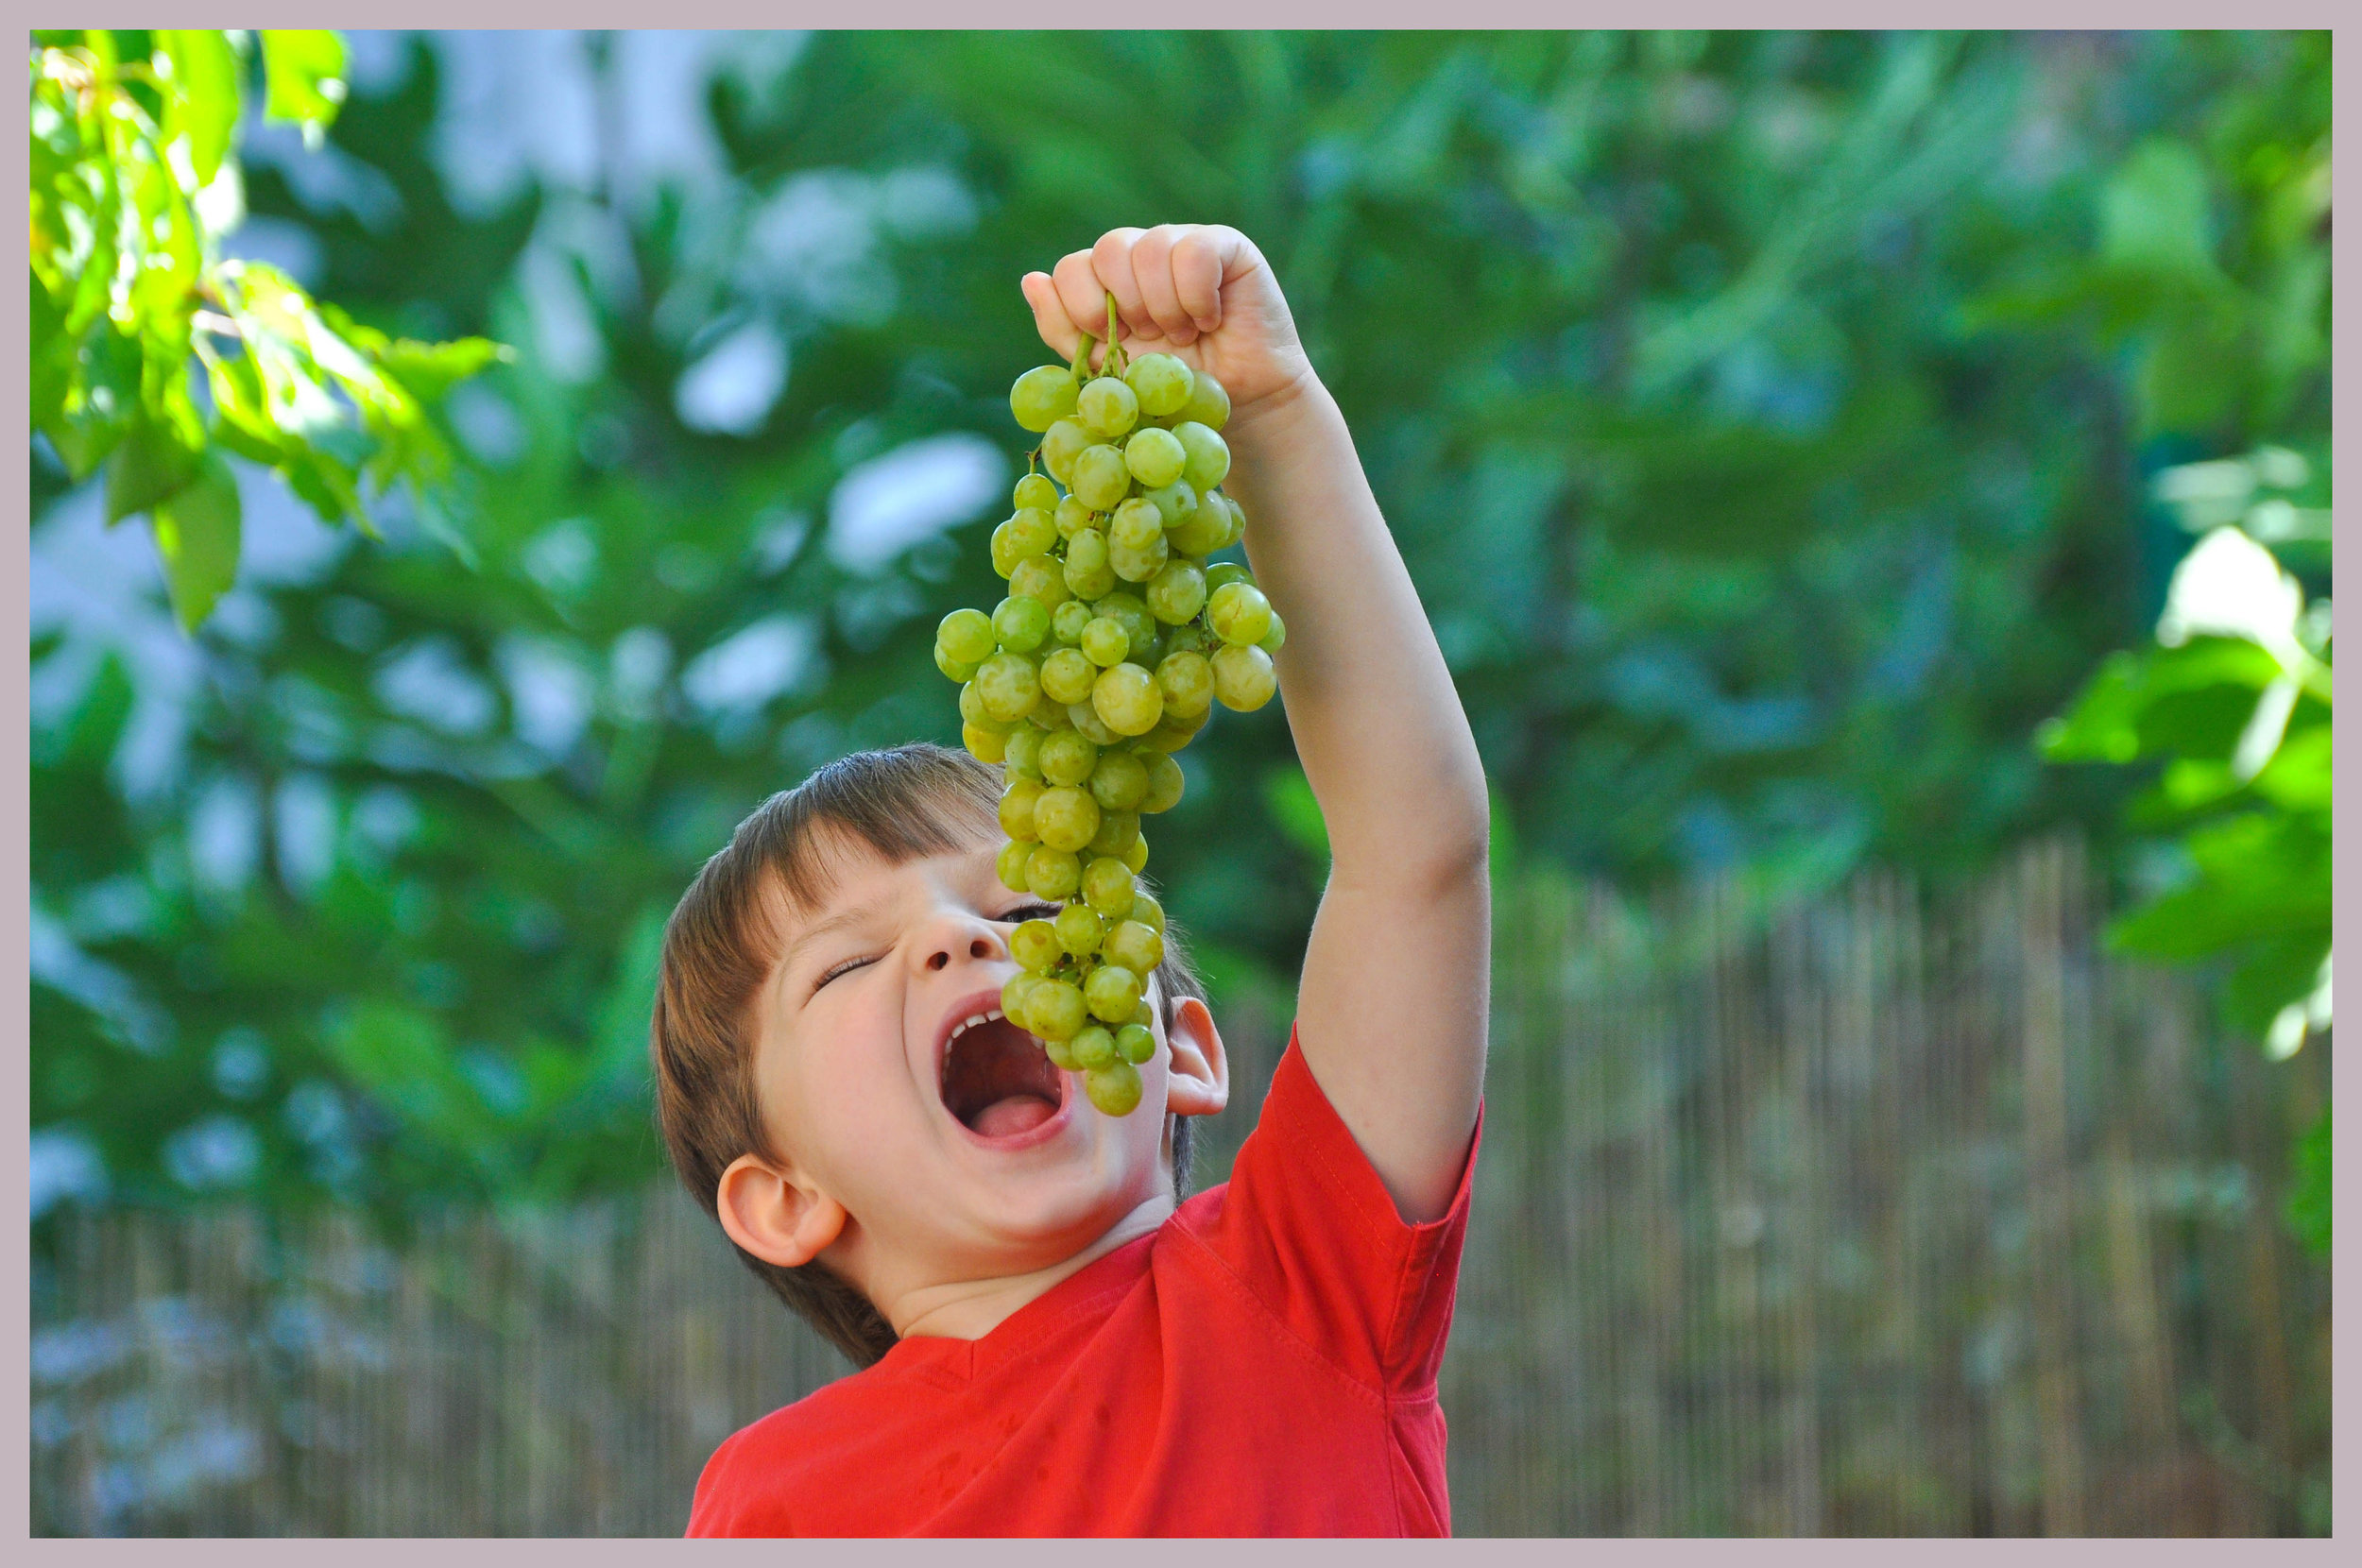 Супер детка в виноградной роще